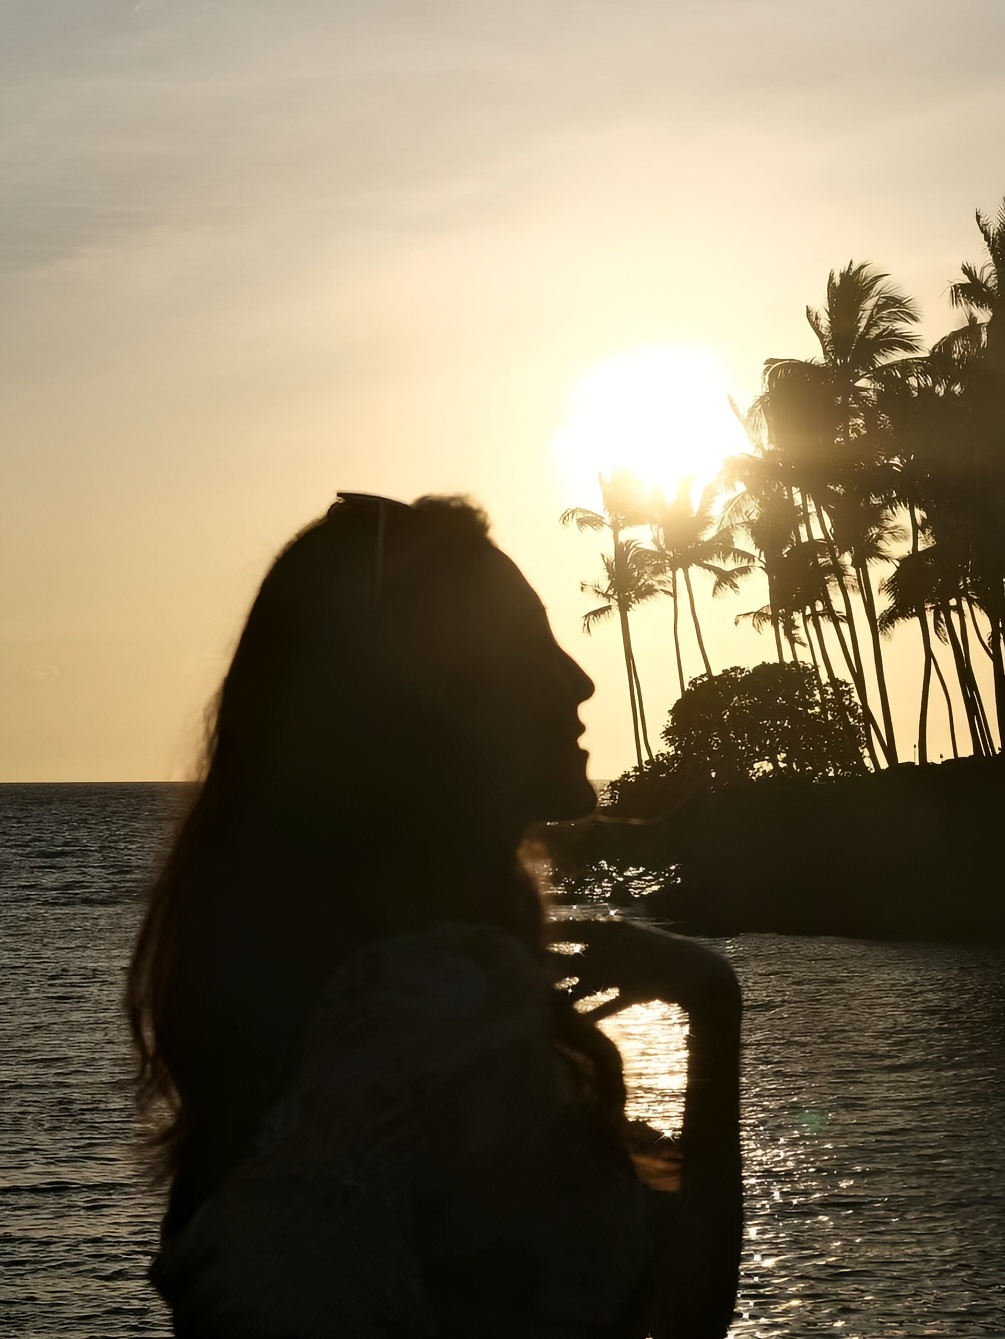 夏威夷大岛|不忙的话就陪我去海边看日落吧